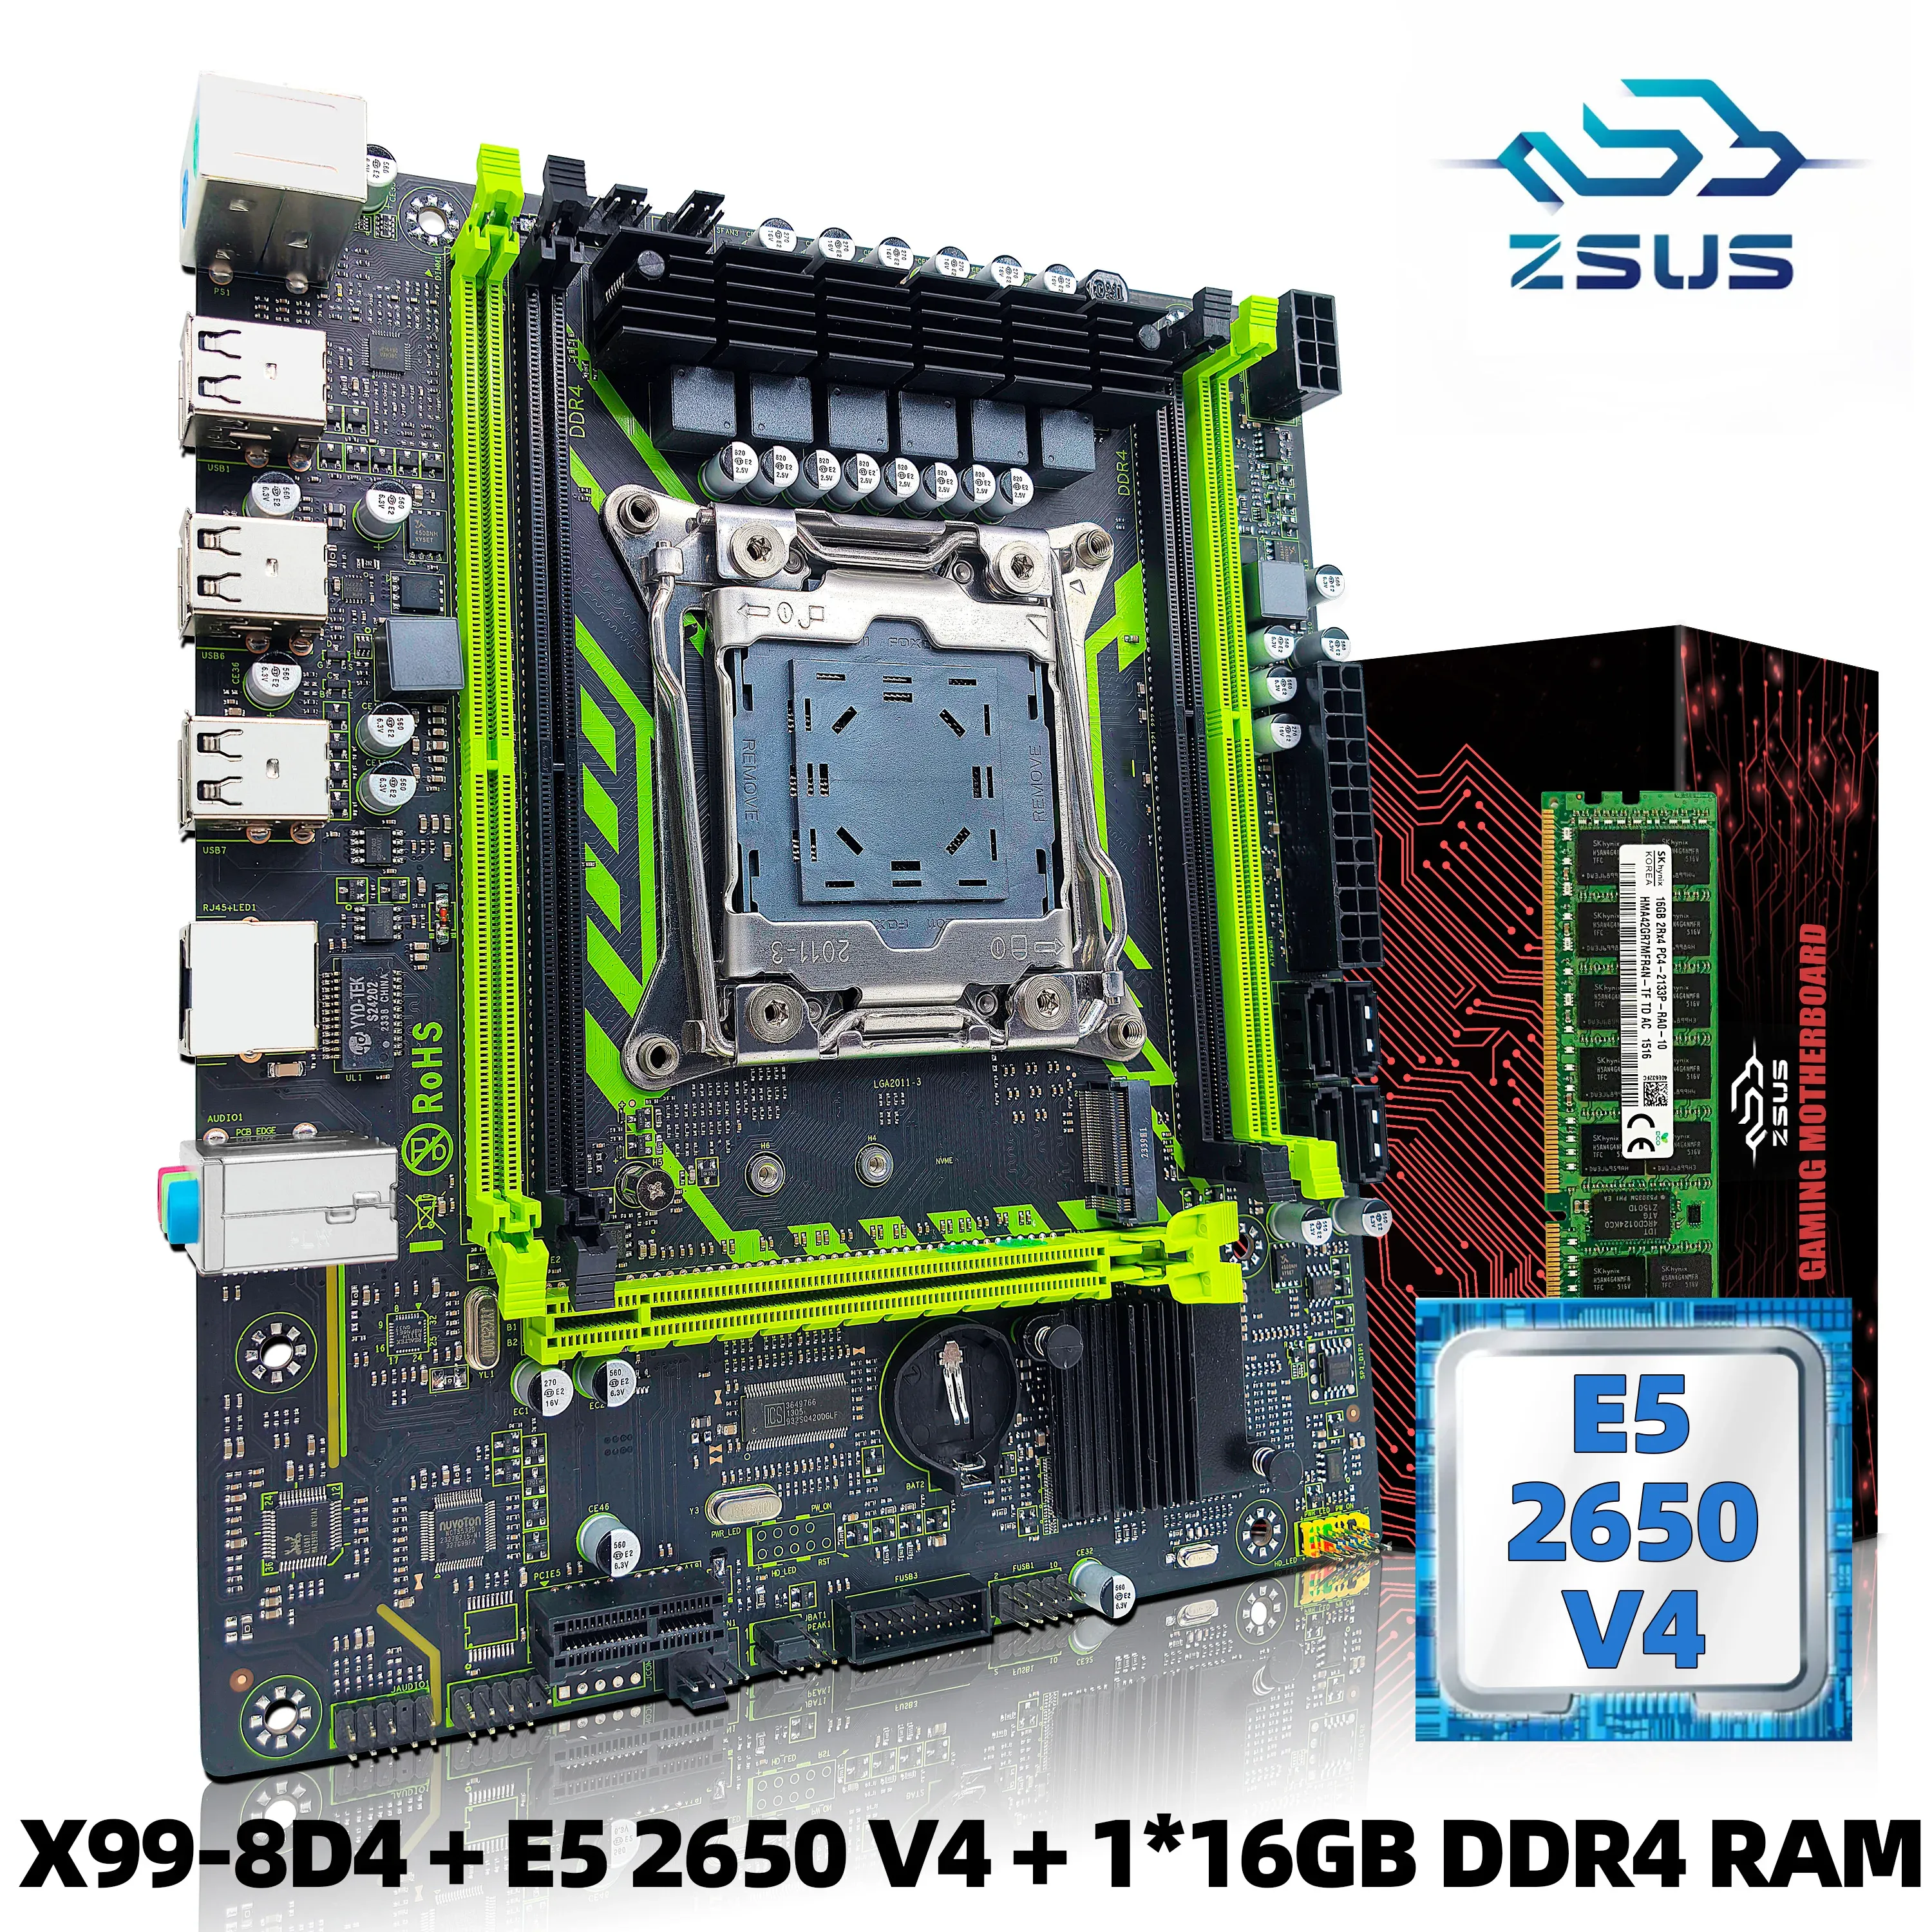 ZSUS-X99-8D4 pplaca mãe (Intel LGA2011-3 + Xeon E5 2650 V4 CPU), NVME M.2 SATA